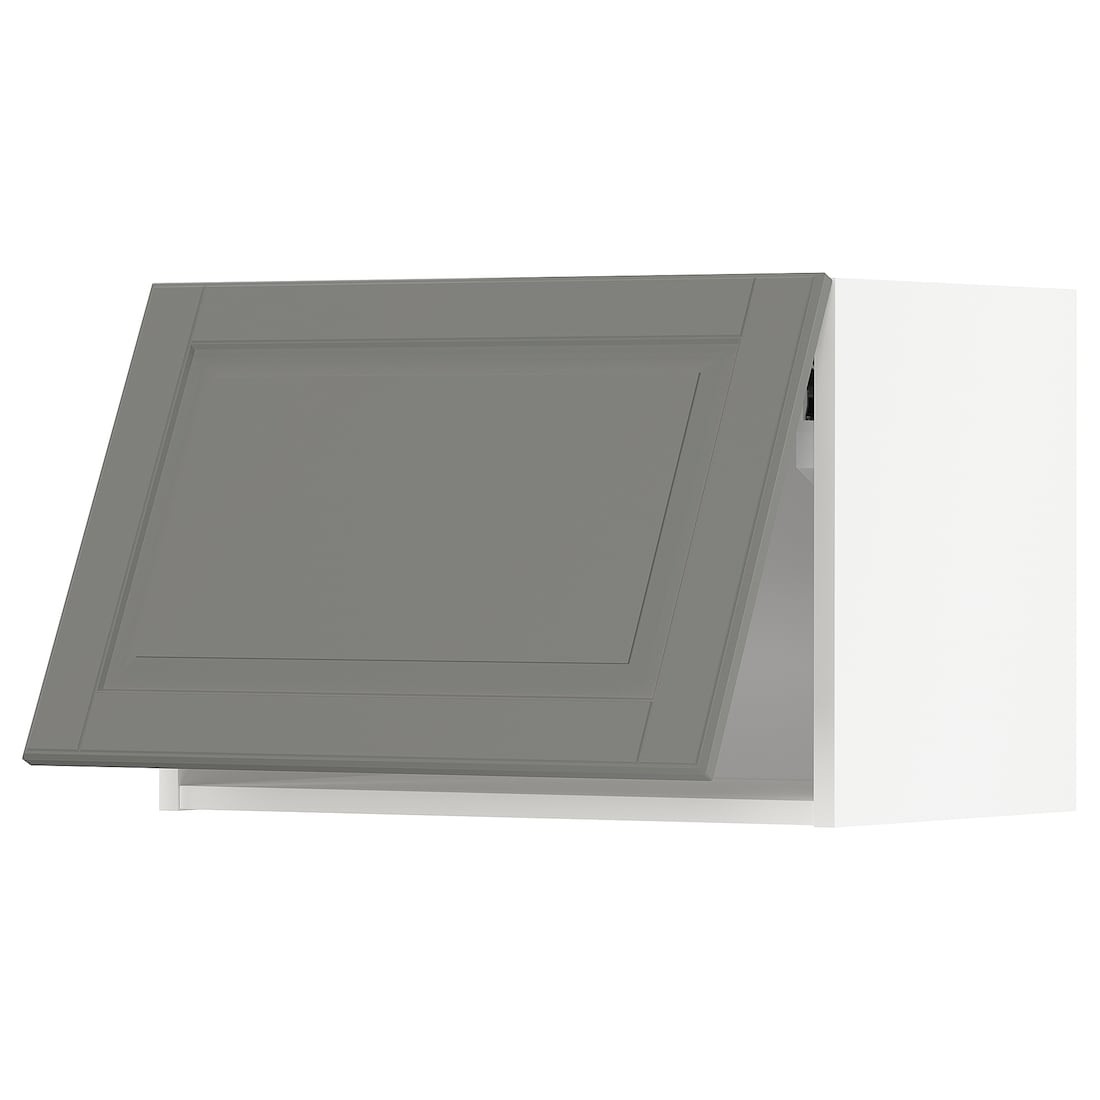 METOD МЕТОД Навесной горизонтальный шкаф, белый / Bodbyn серый, 60x40 см